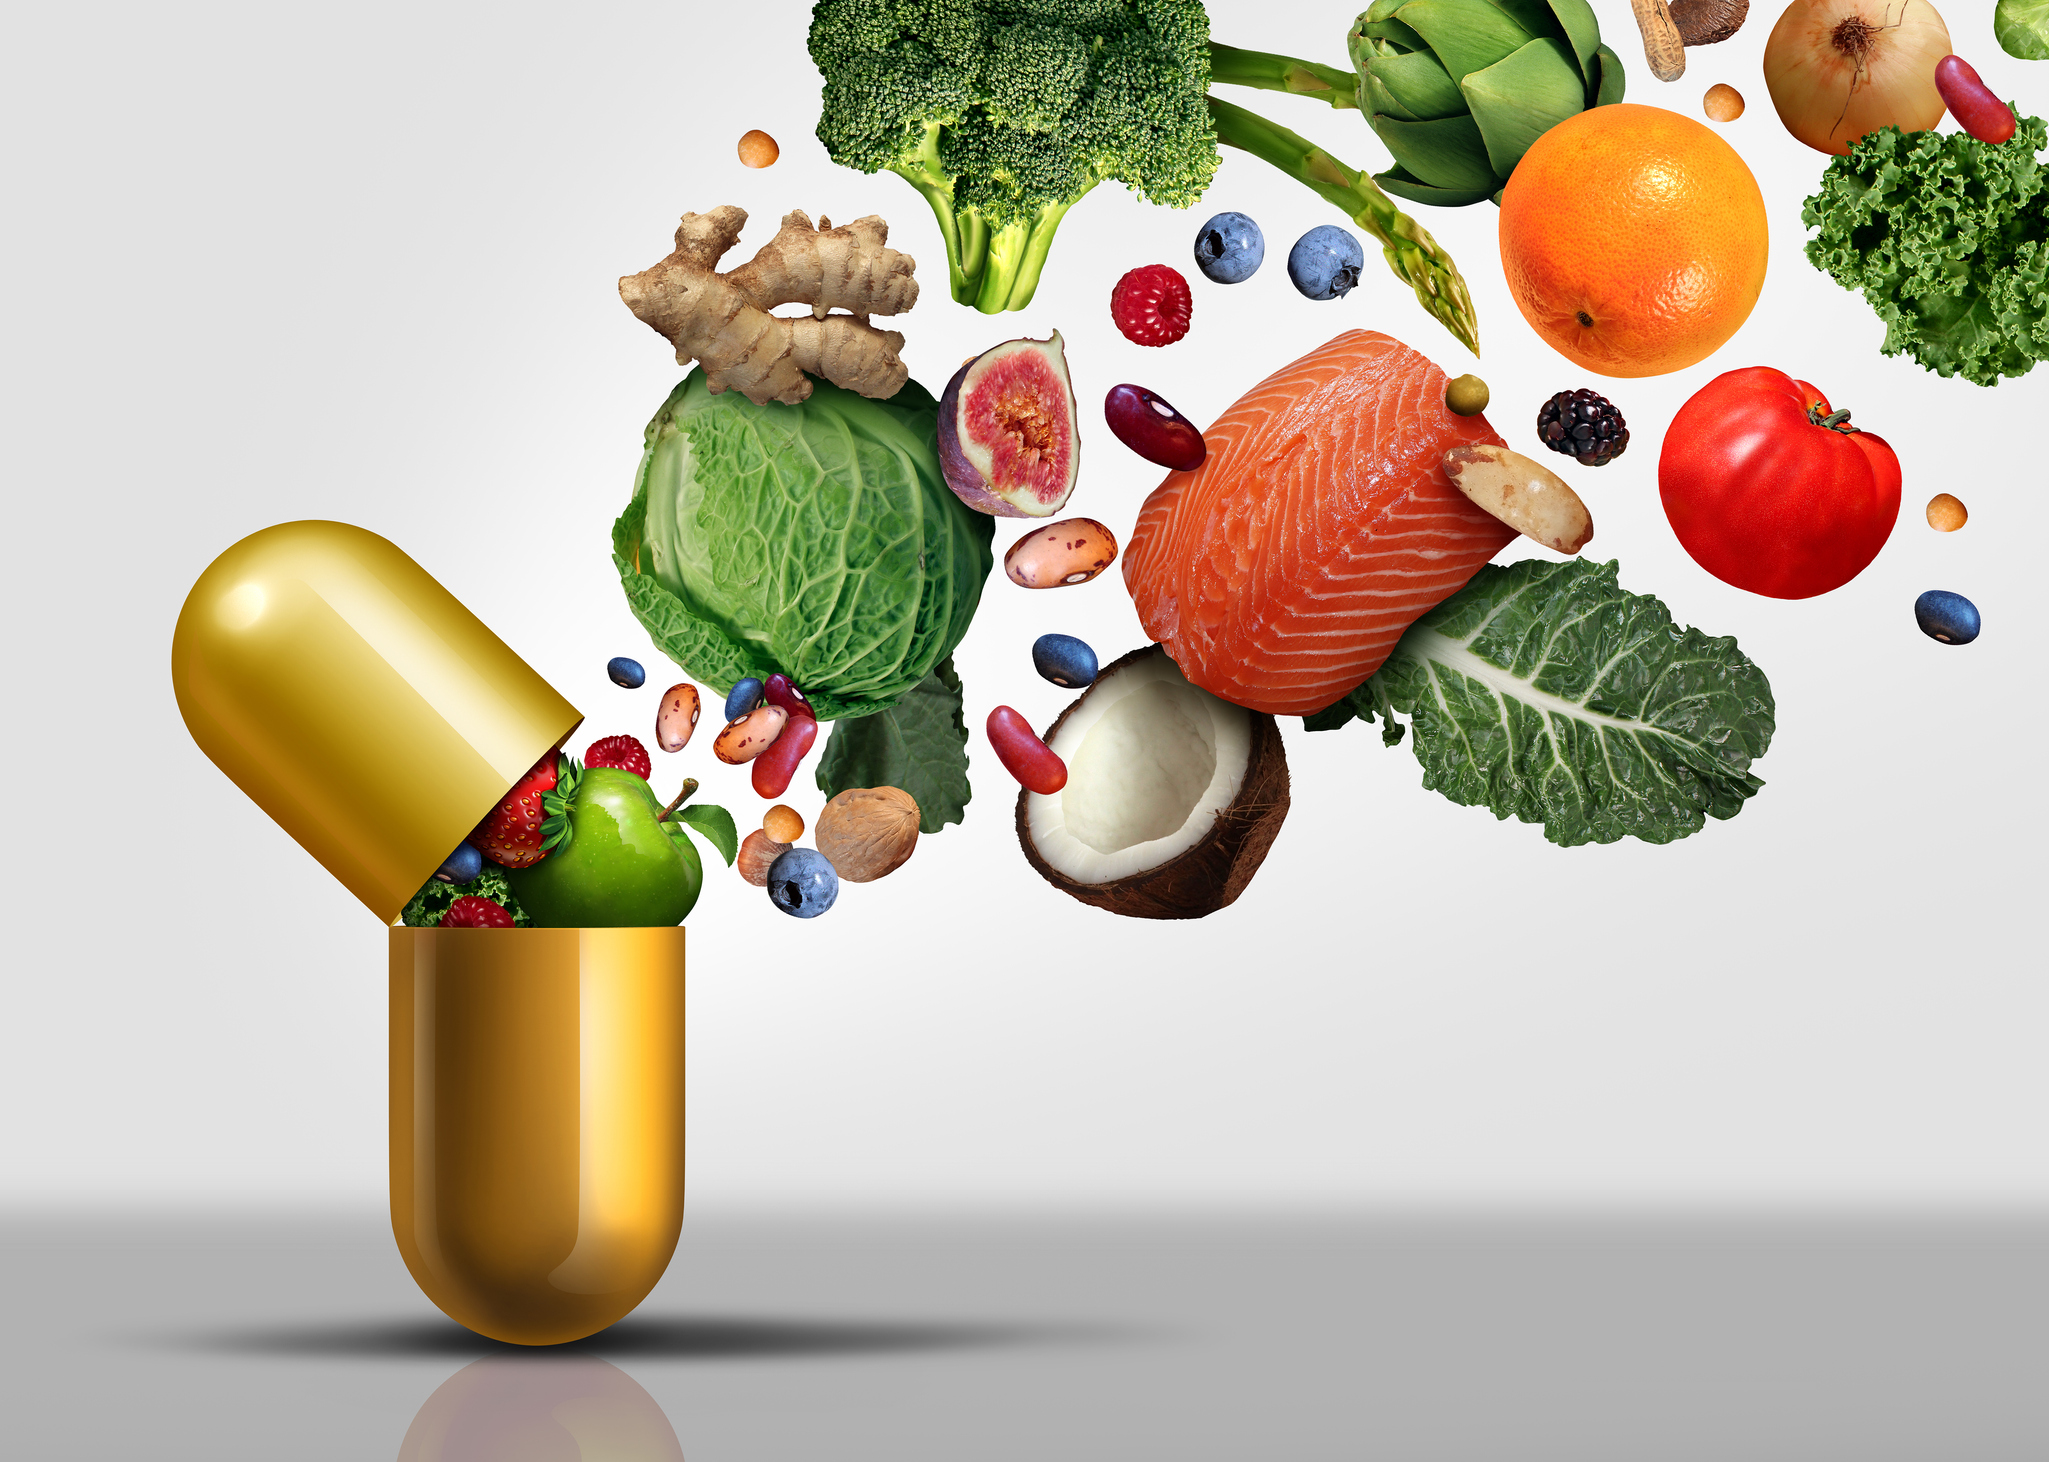 Avitaminóza alebo nedostatok vitamínov. Aké sú jej riziká?